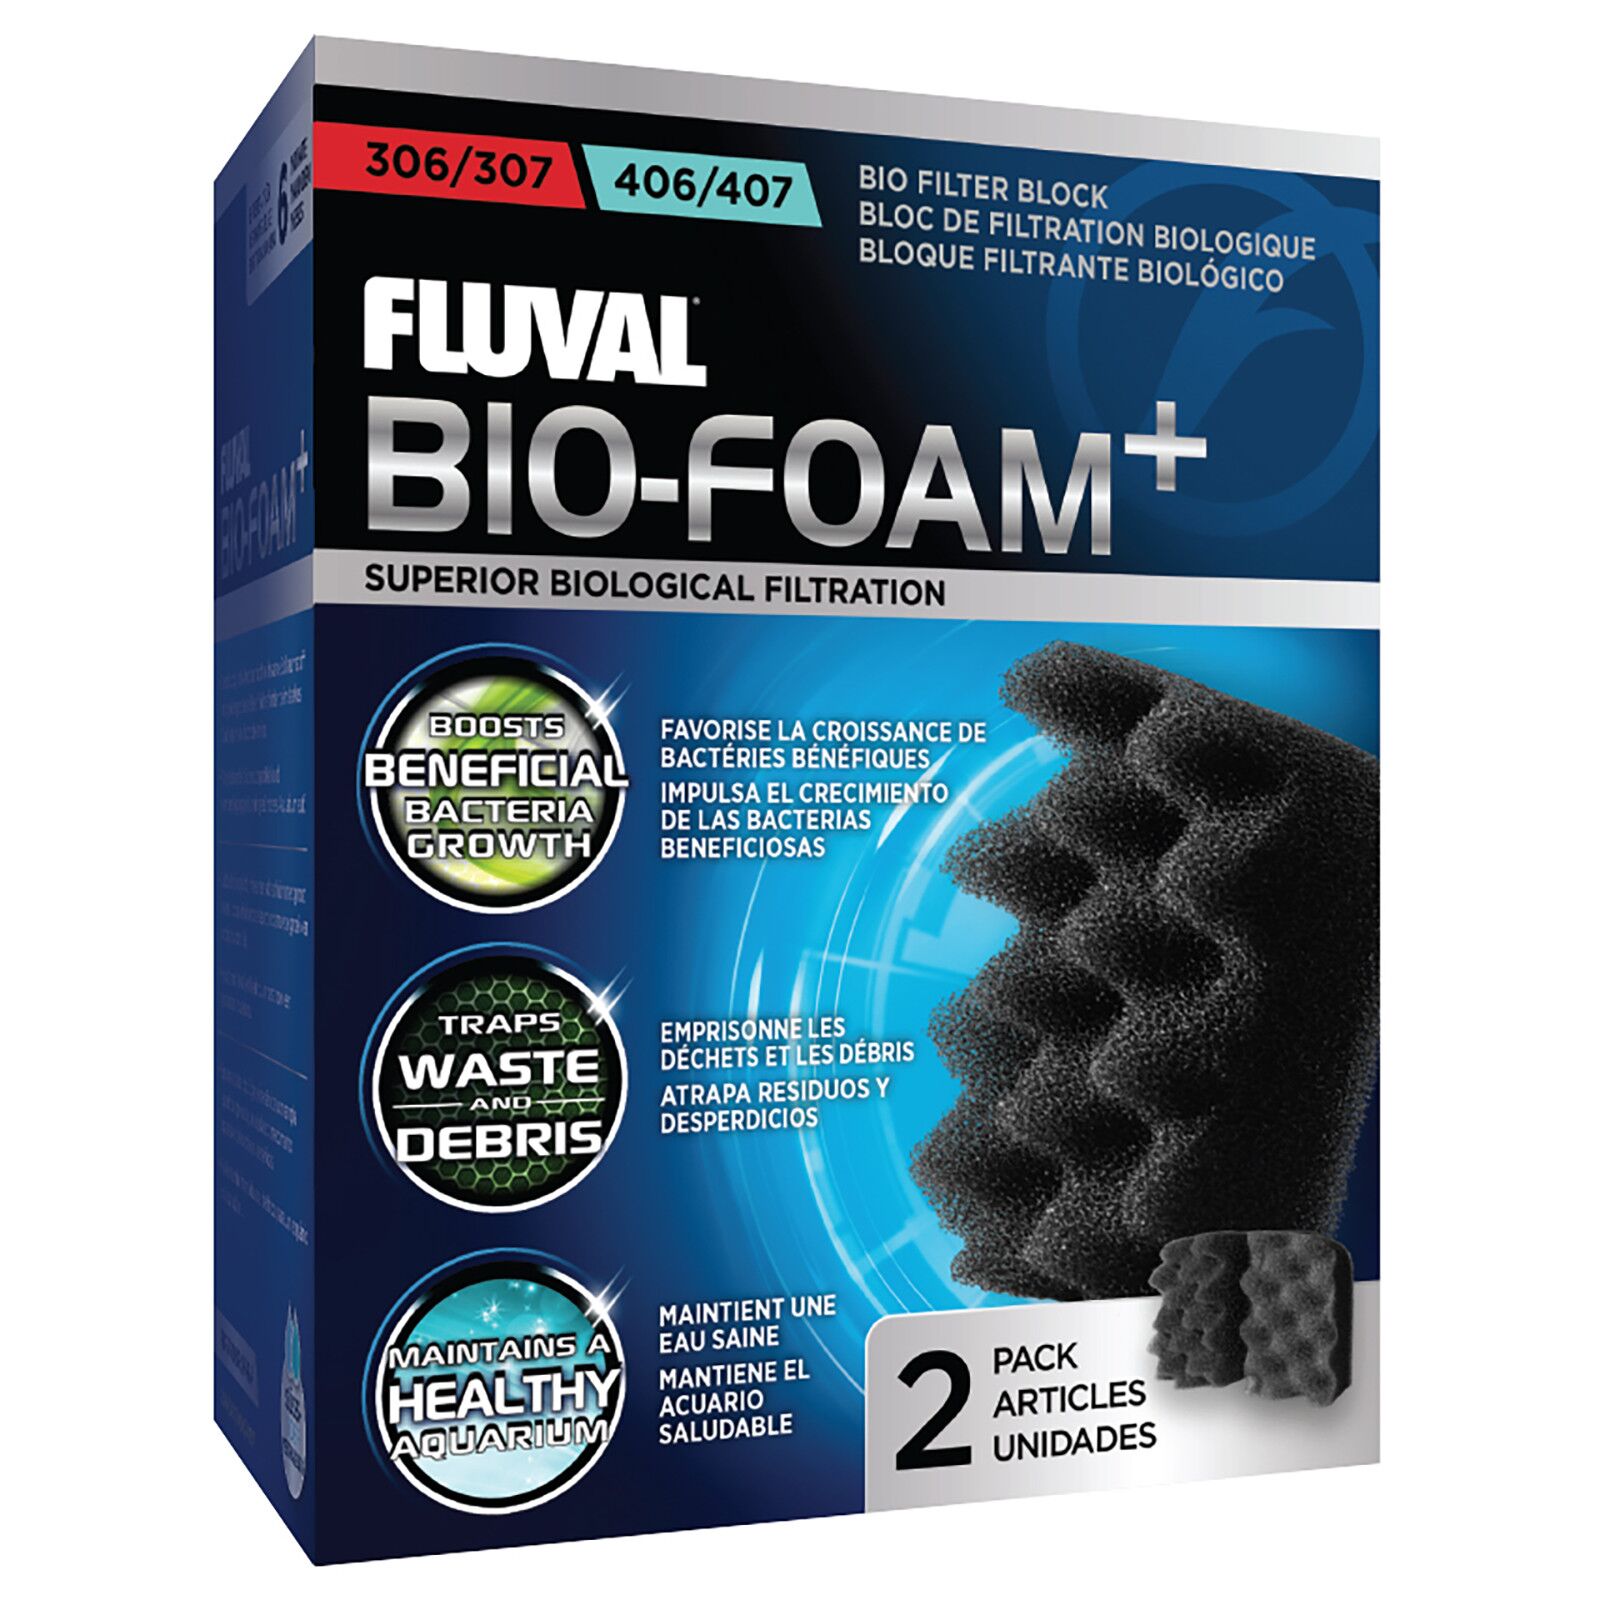 Fluval - Bio-Foam+